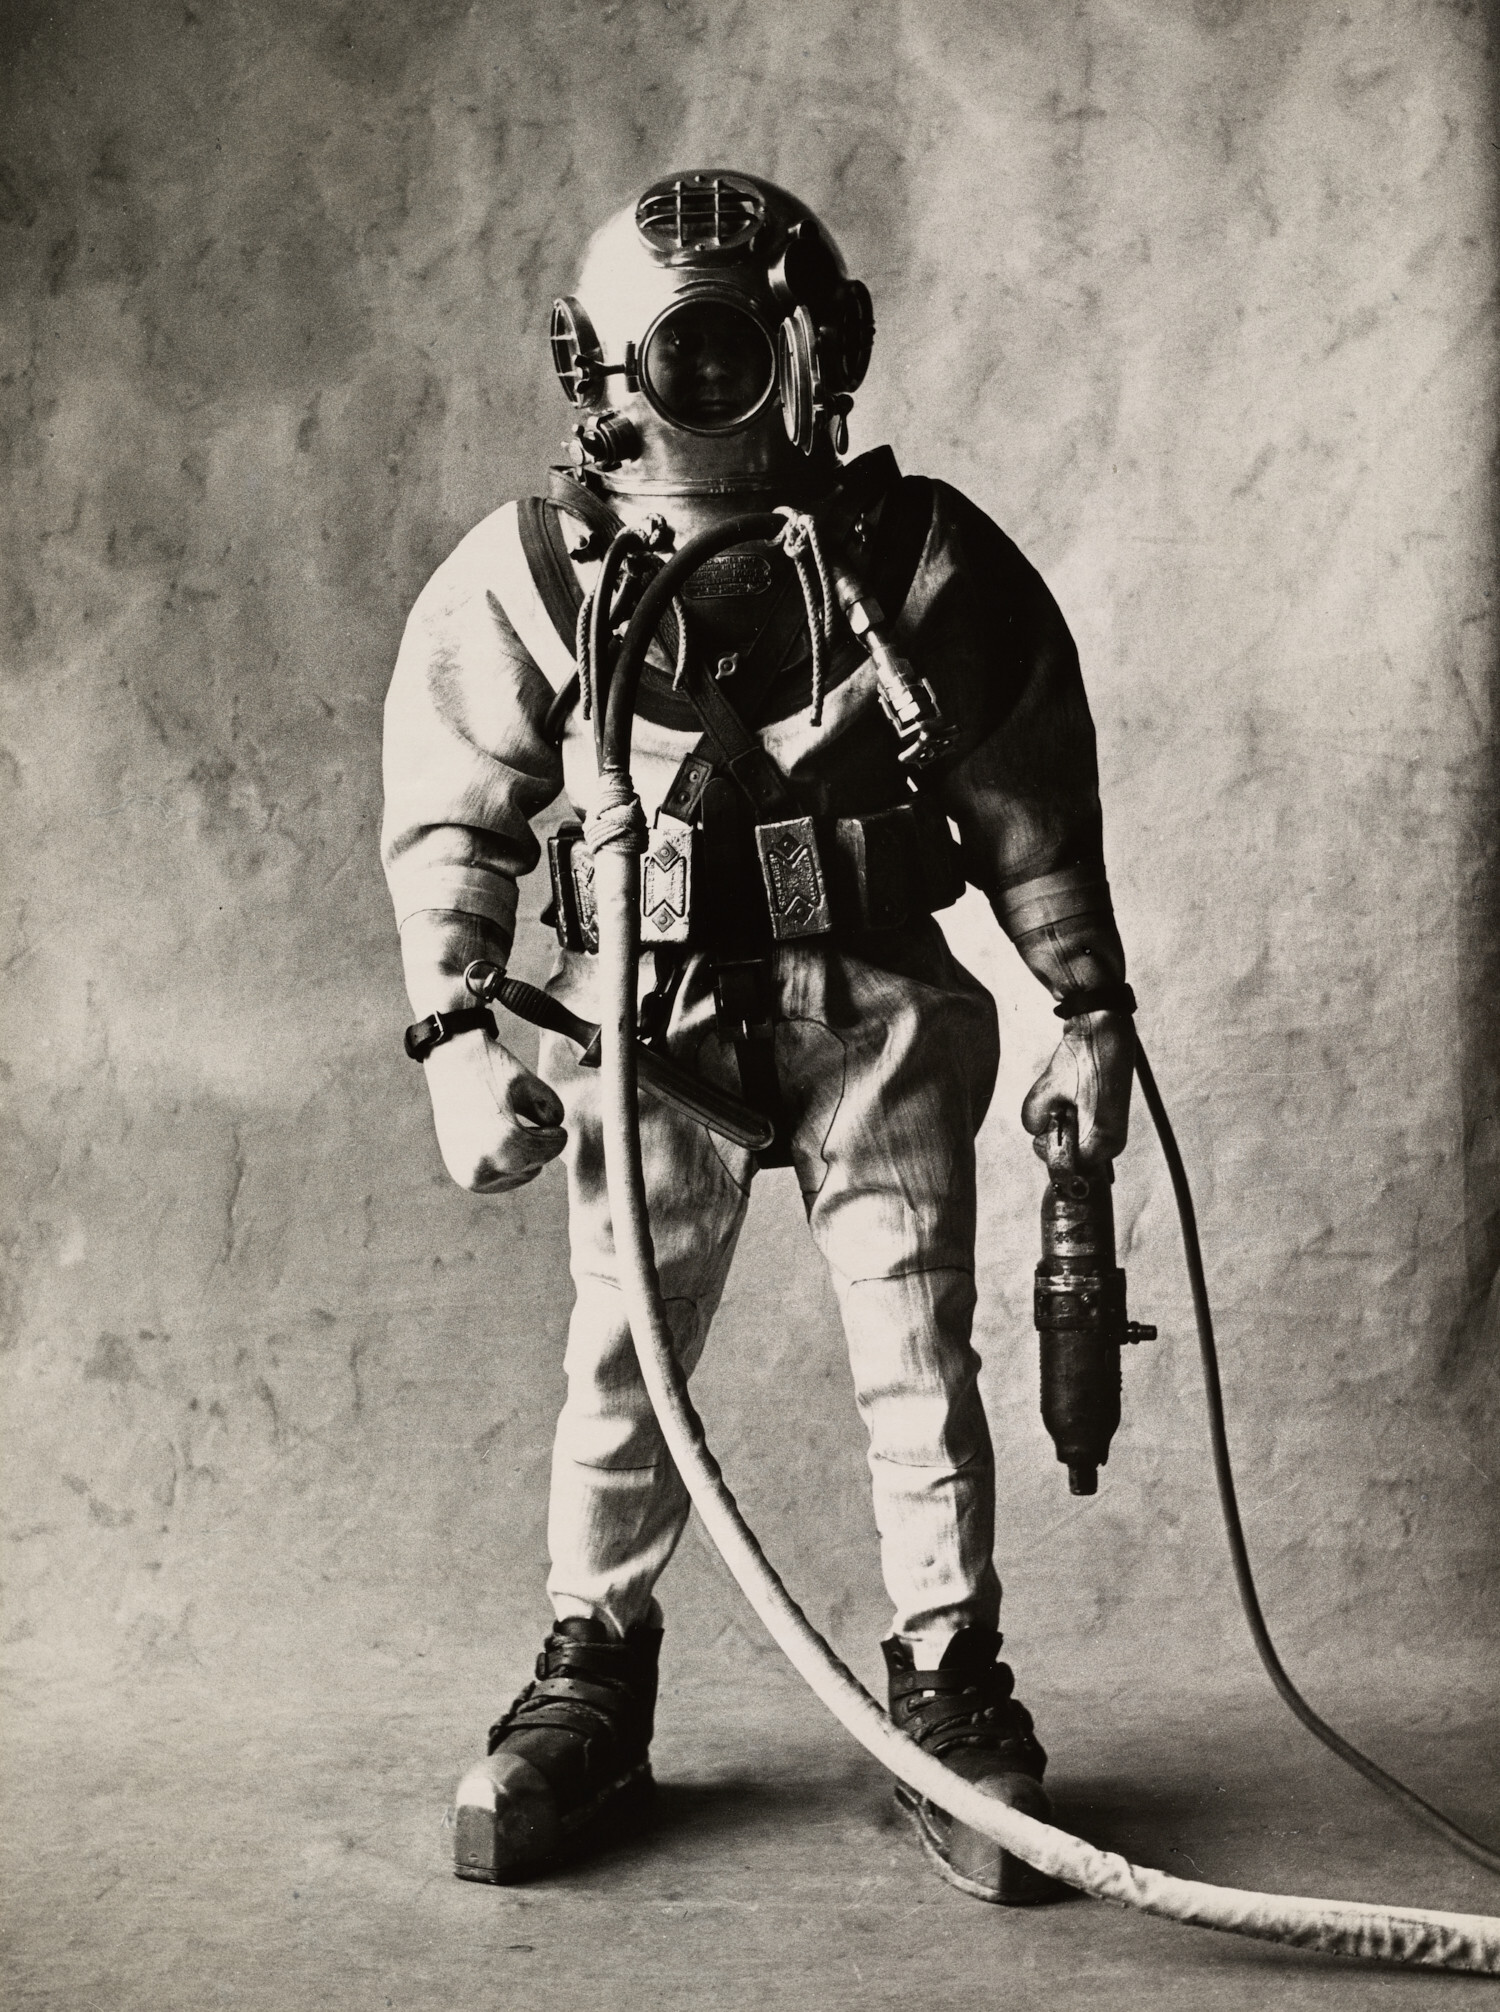 Deep Sea Diver, Нью-Йорк, 1951 г. Фотограф Ирвин Пенн